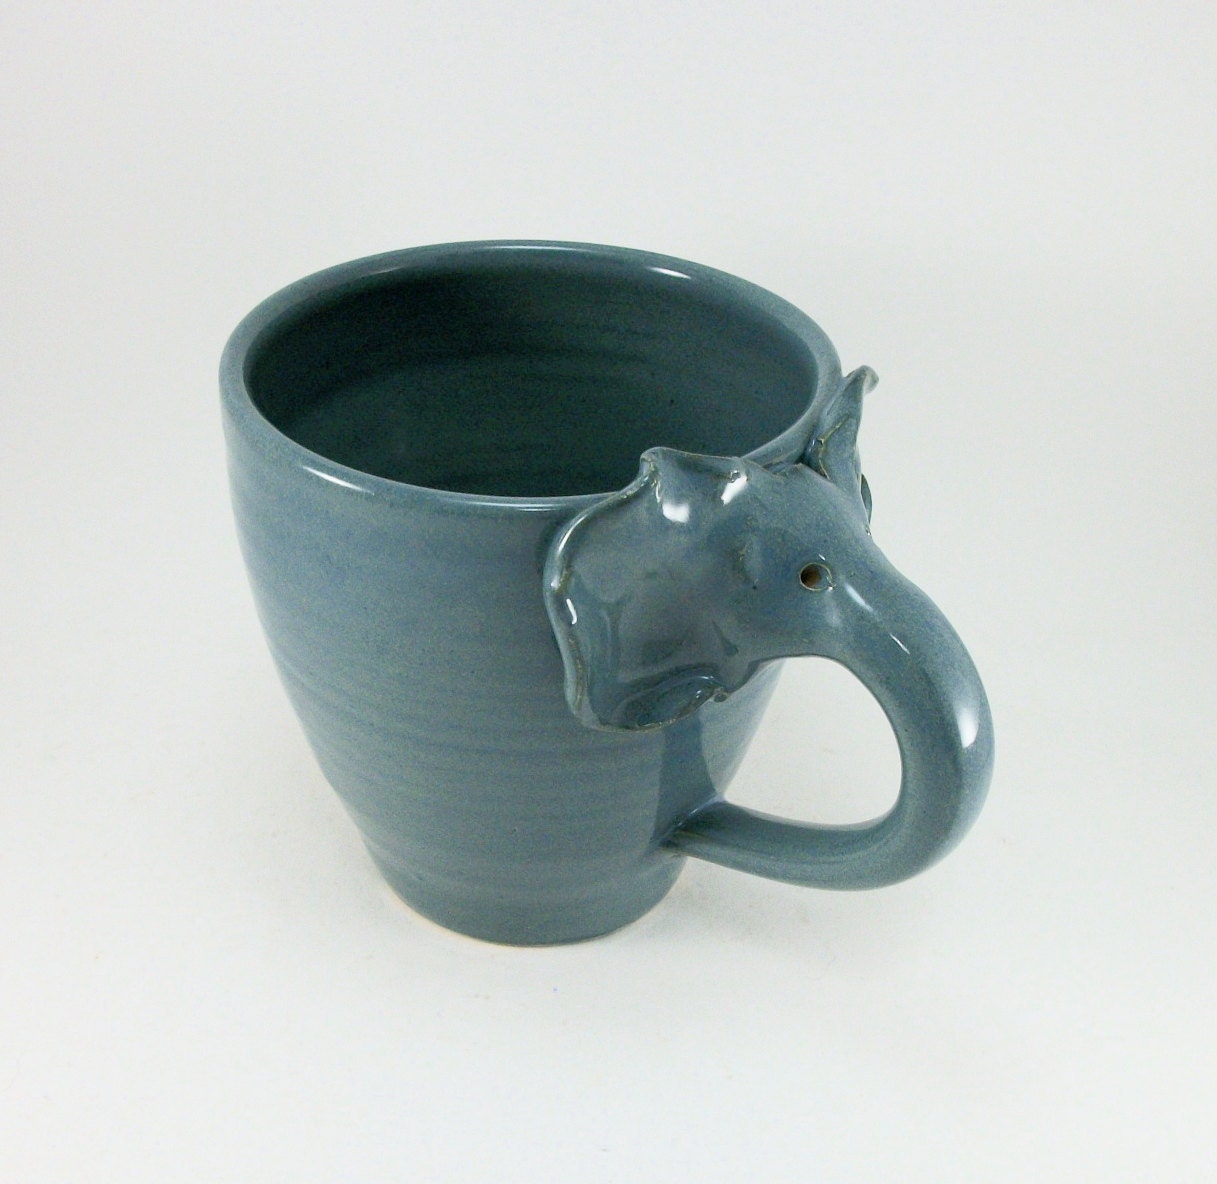 another elephant mug